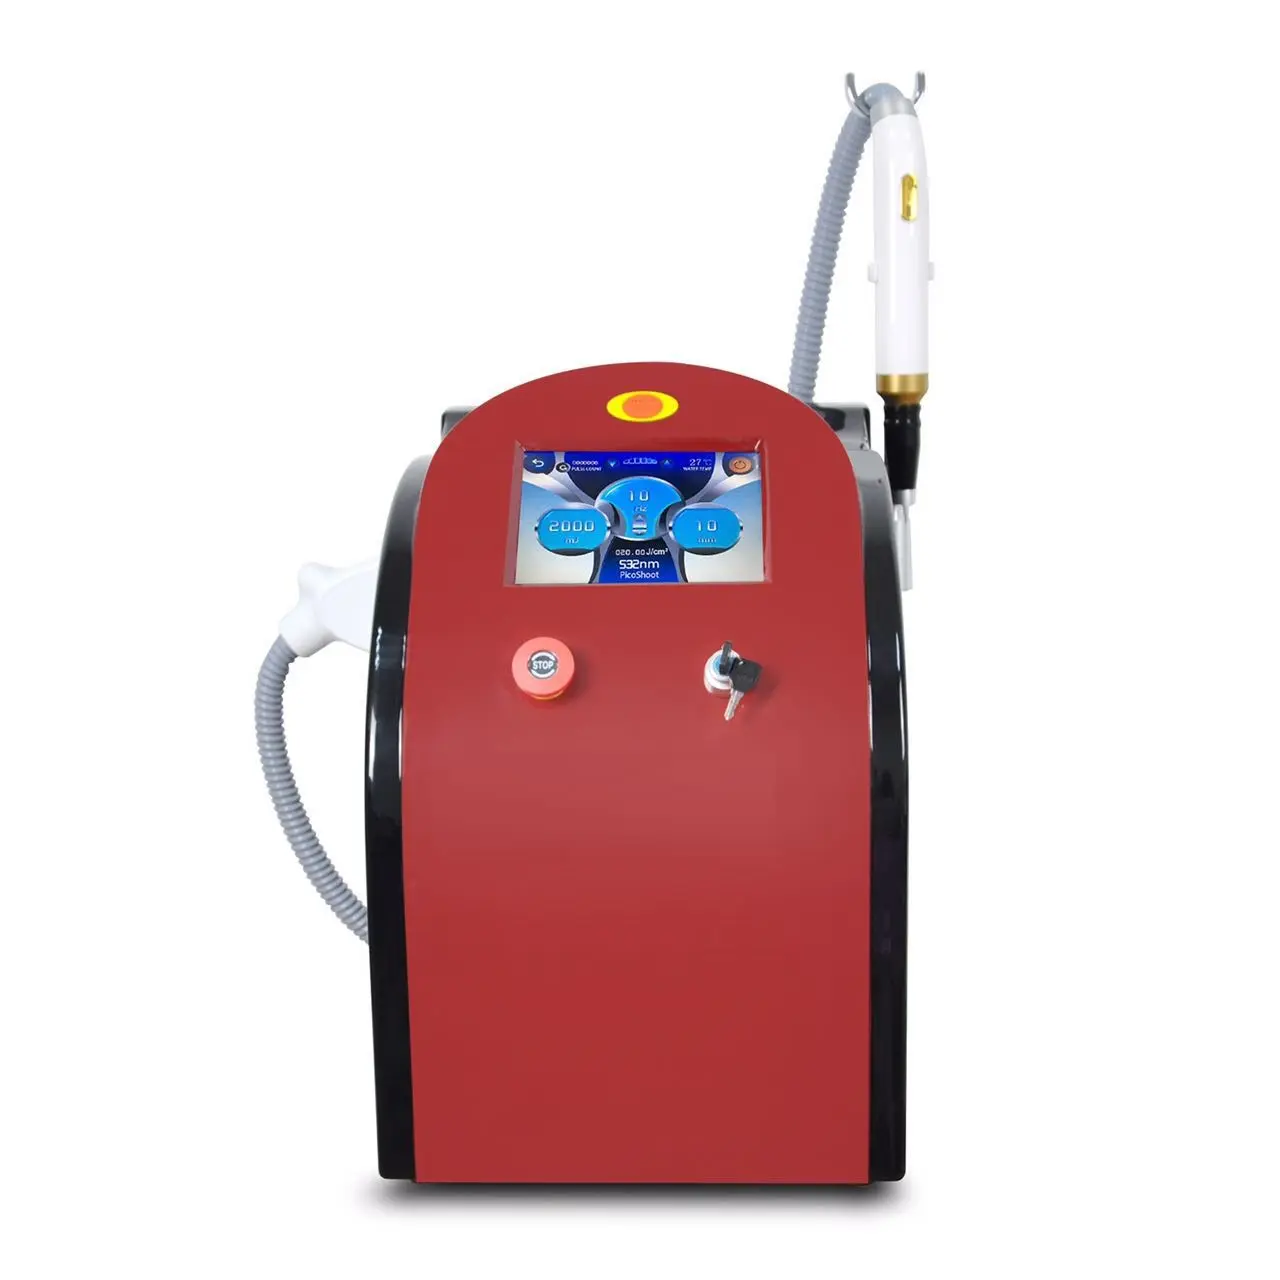 Mslpl02 portátil máquina de remoção de rugas, picosegunda laser